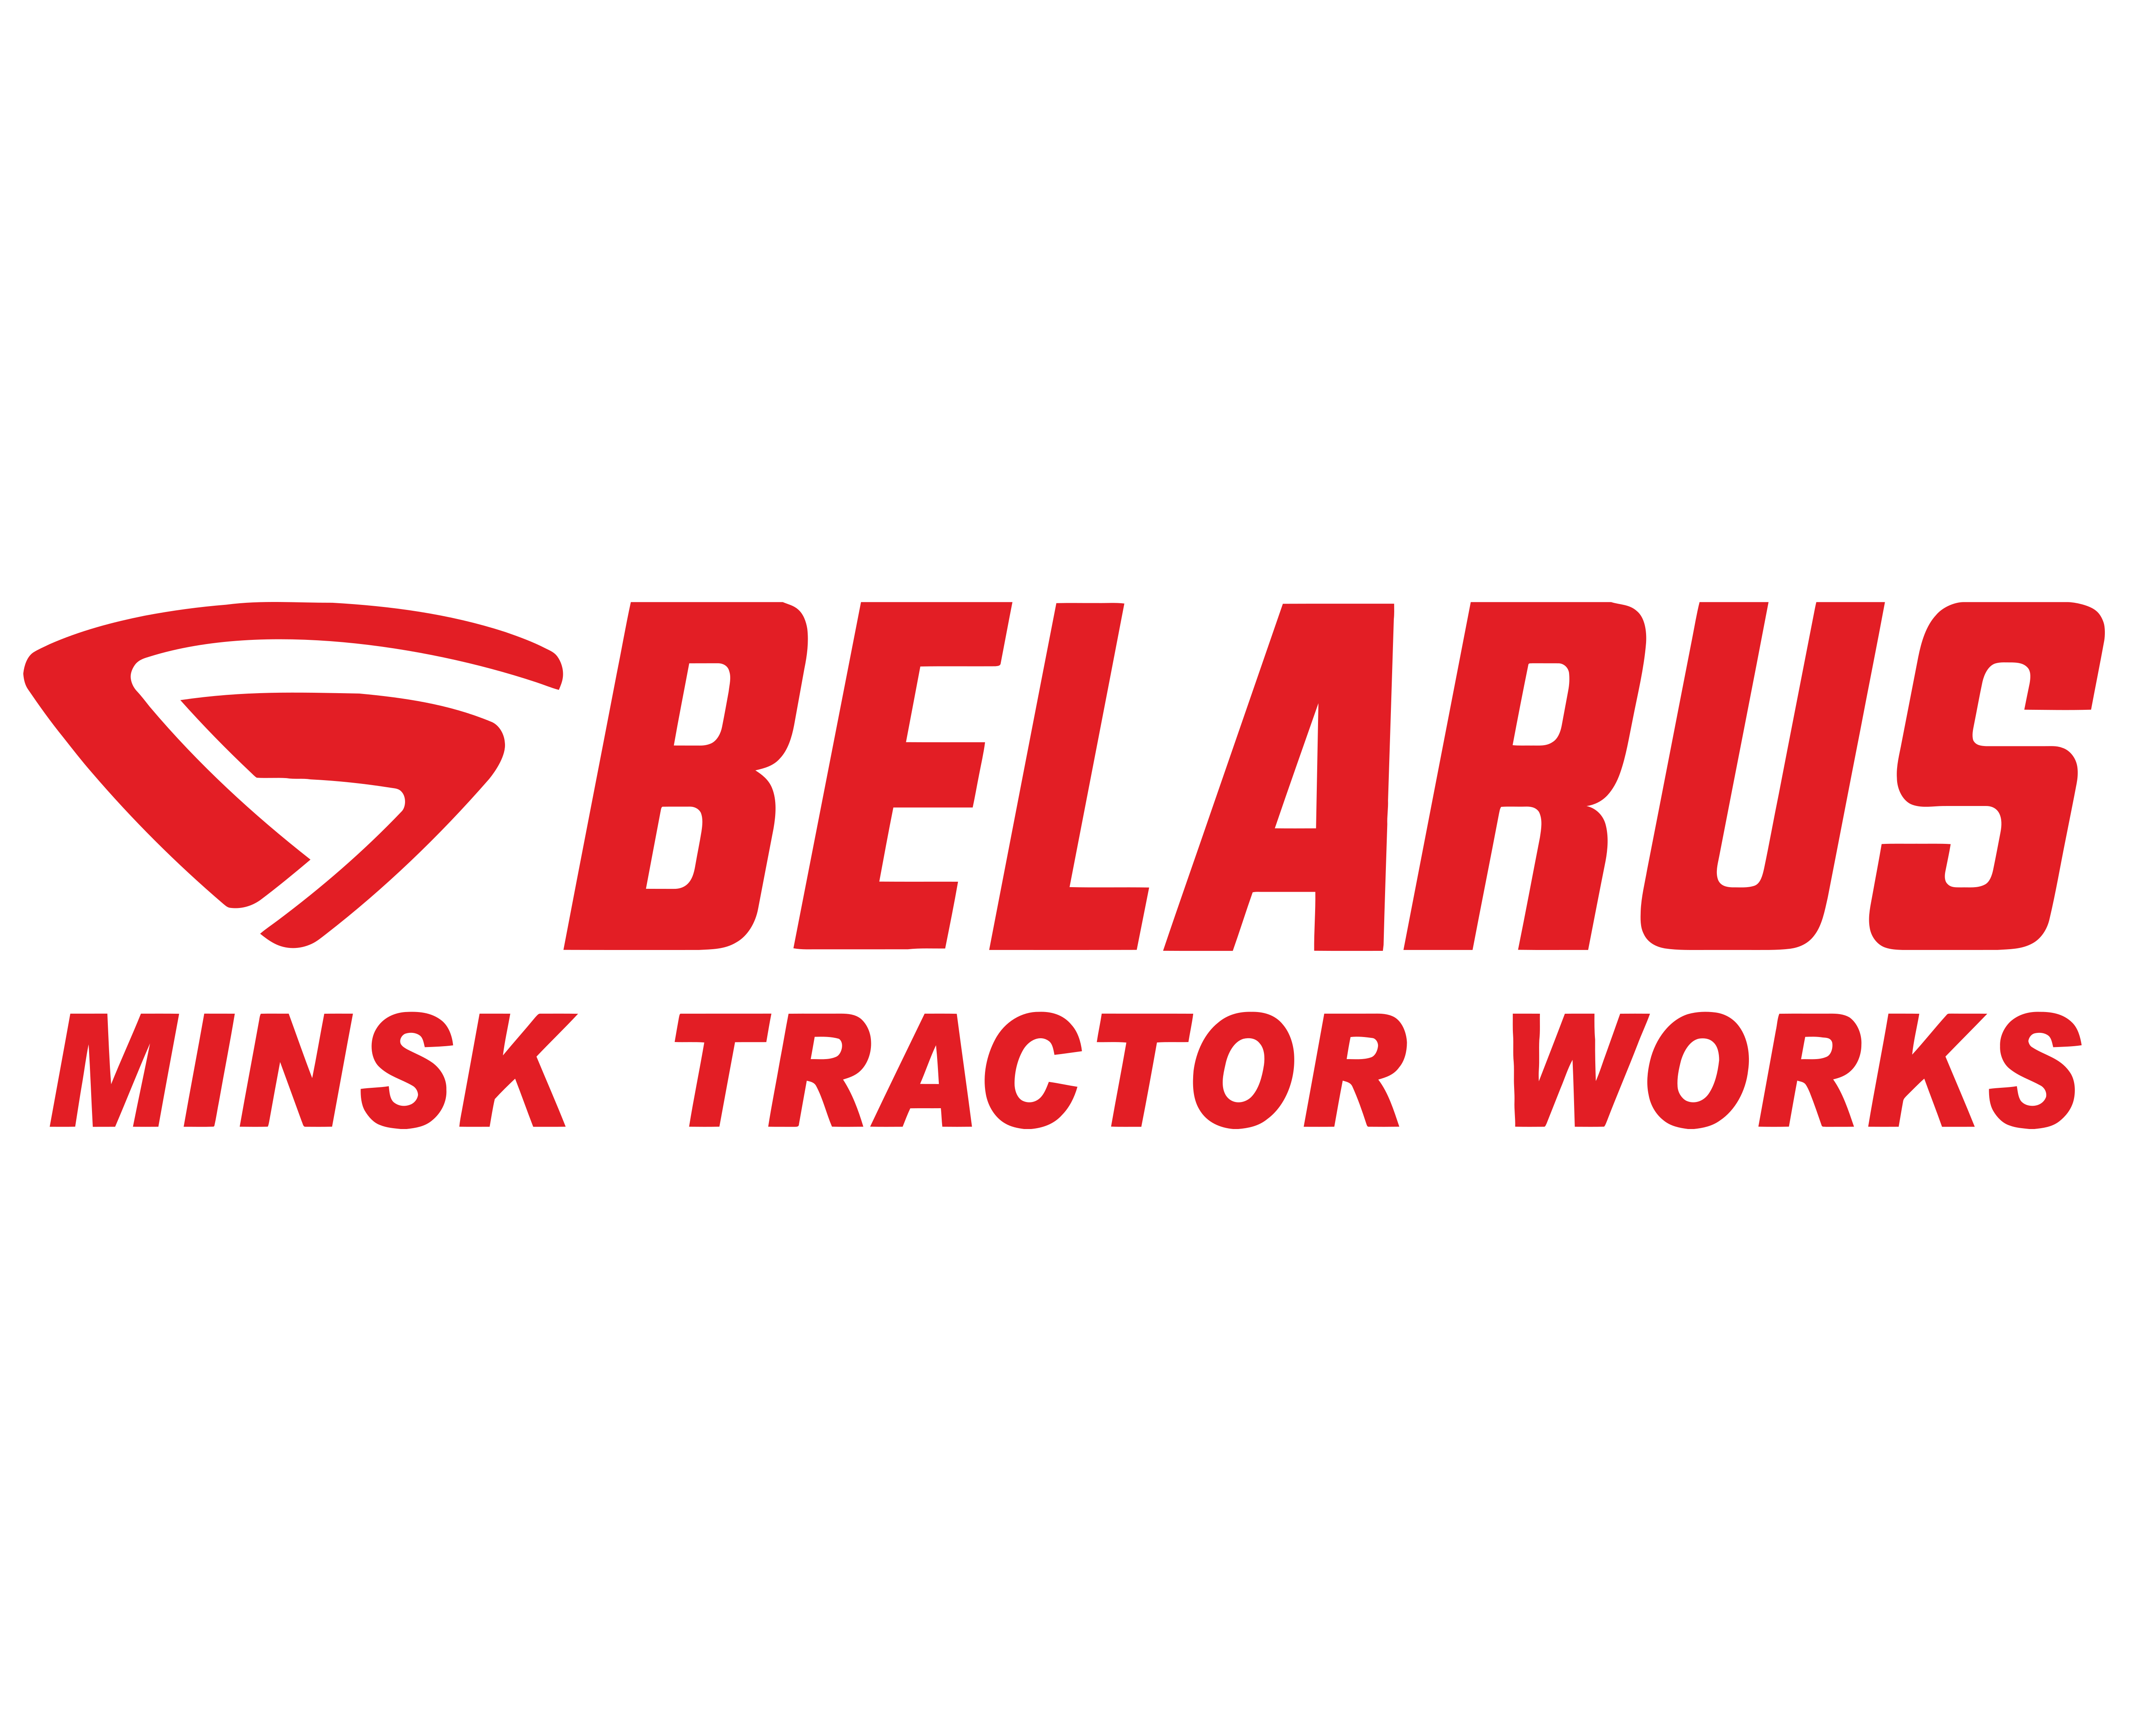 Belarus traktorları üçün ehtiyat hissələri